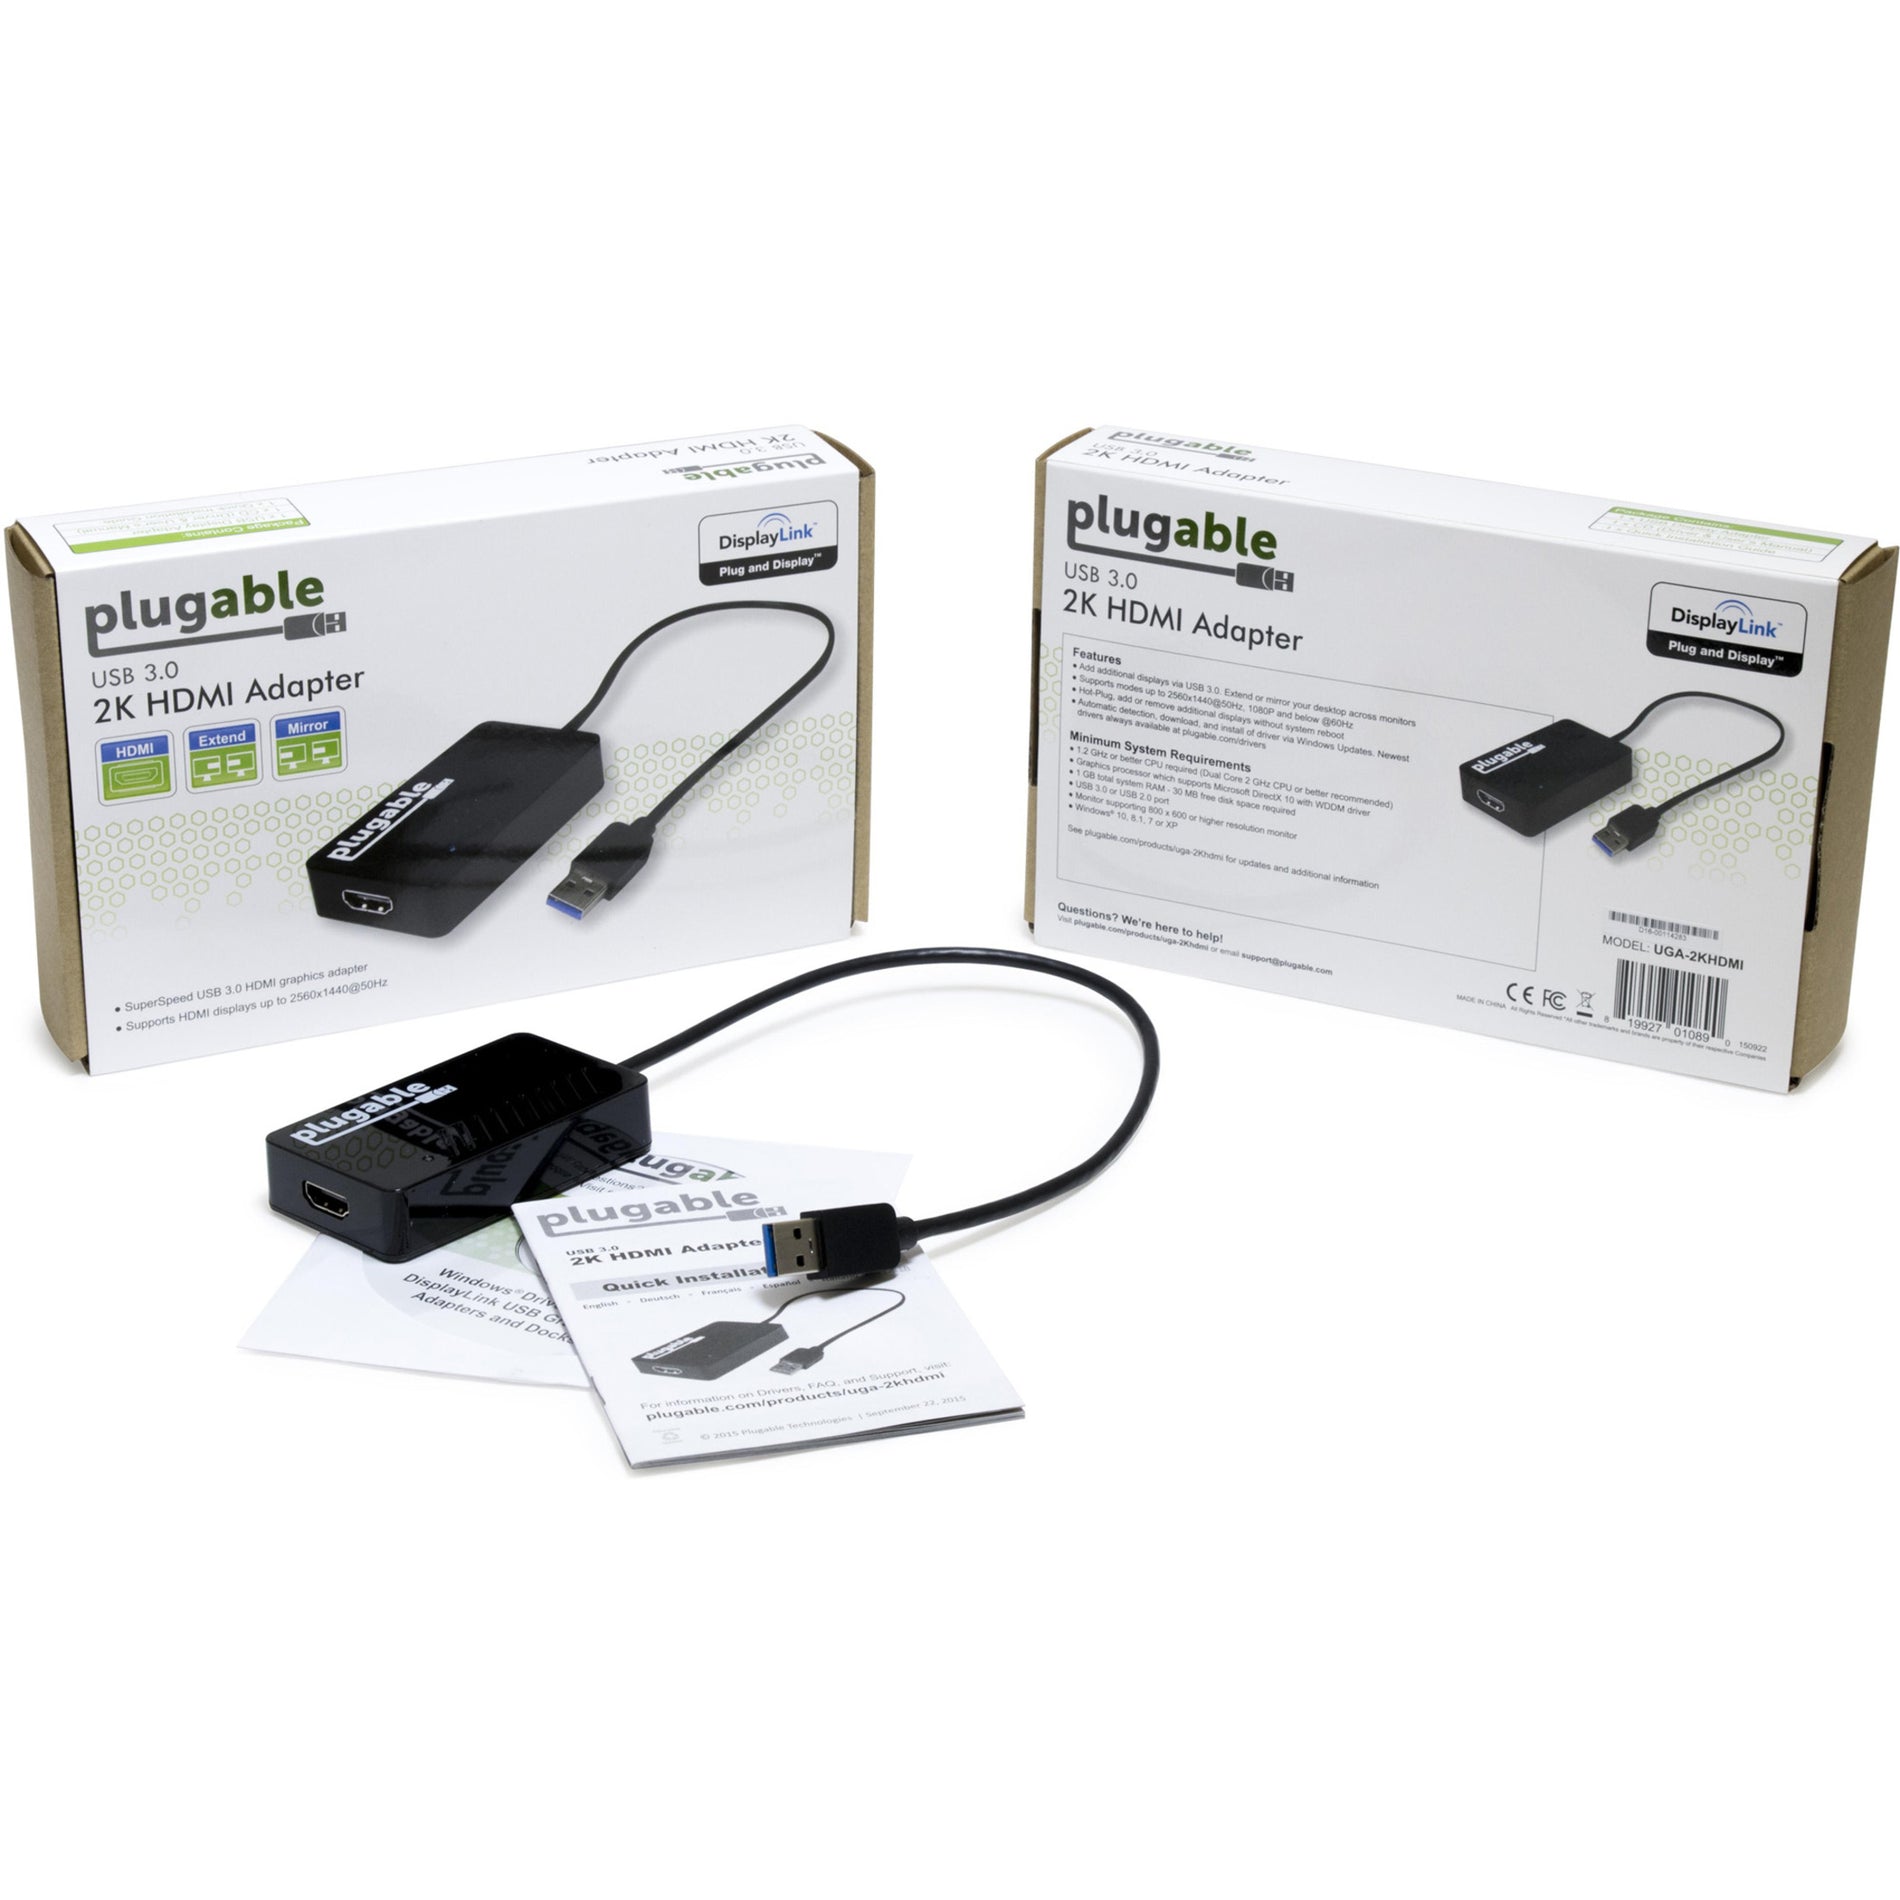 Marca: Plugable Adaptador de gráficos de video USB 3.0 a HDMI Plugable UGA-2KHDMI con audio para múltiples monitores Resolución de 2560 x 1440